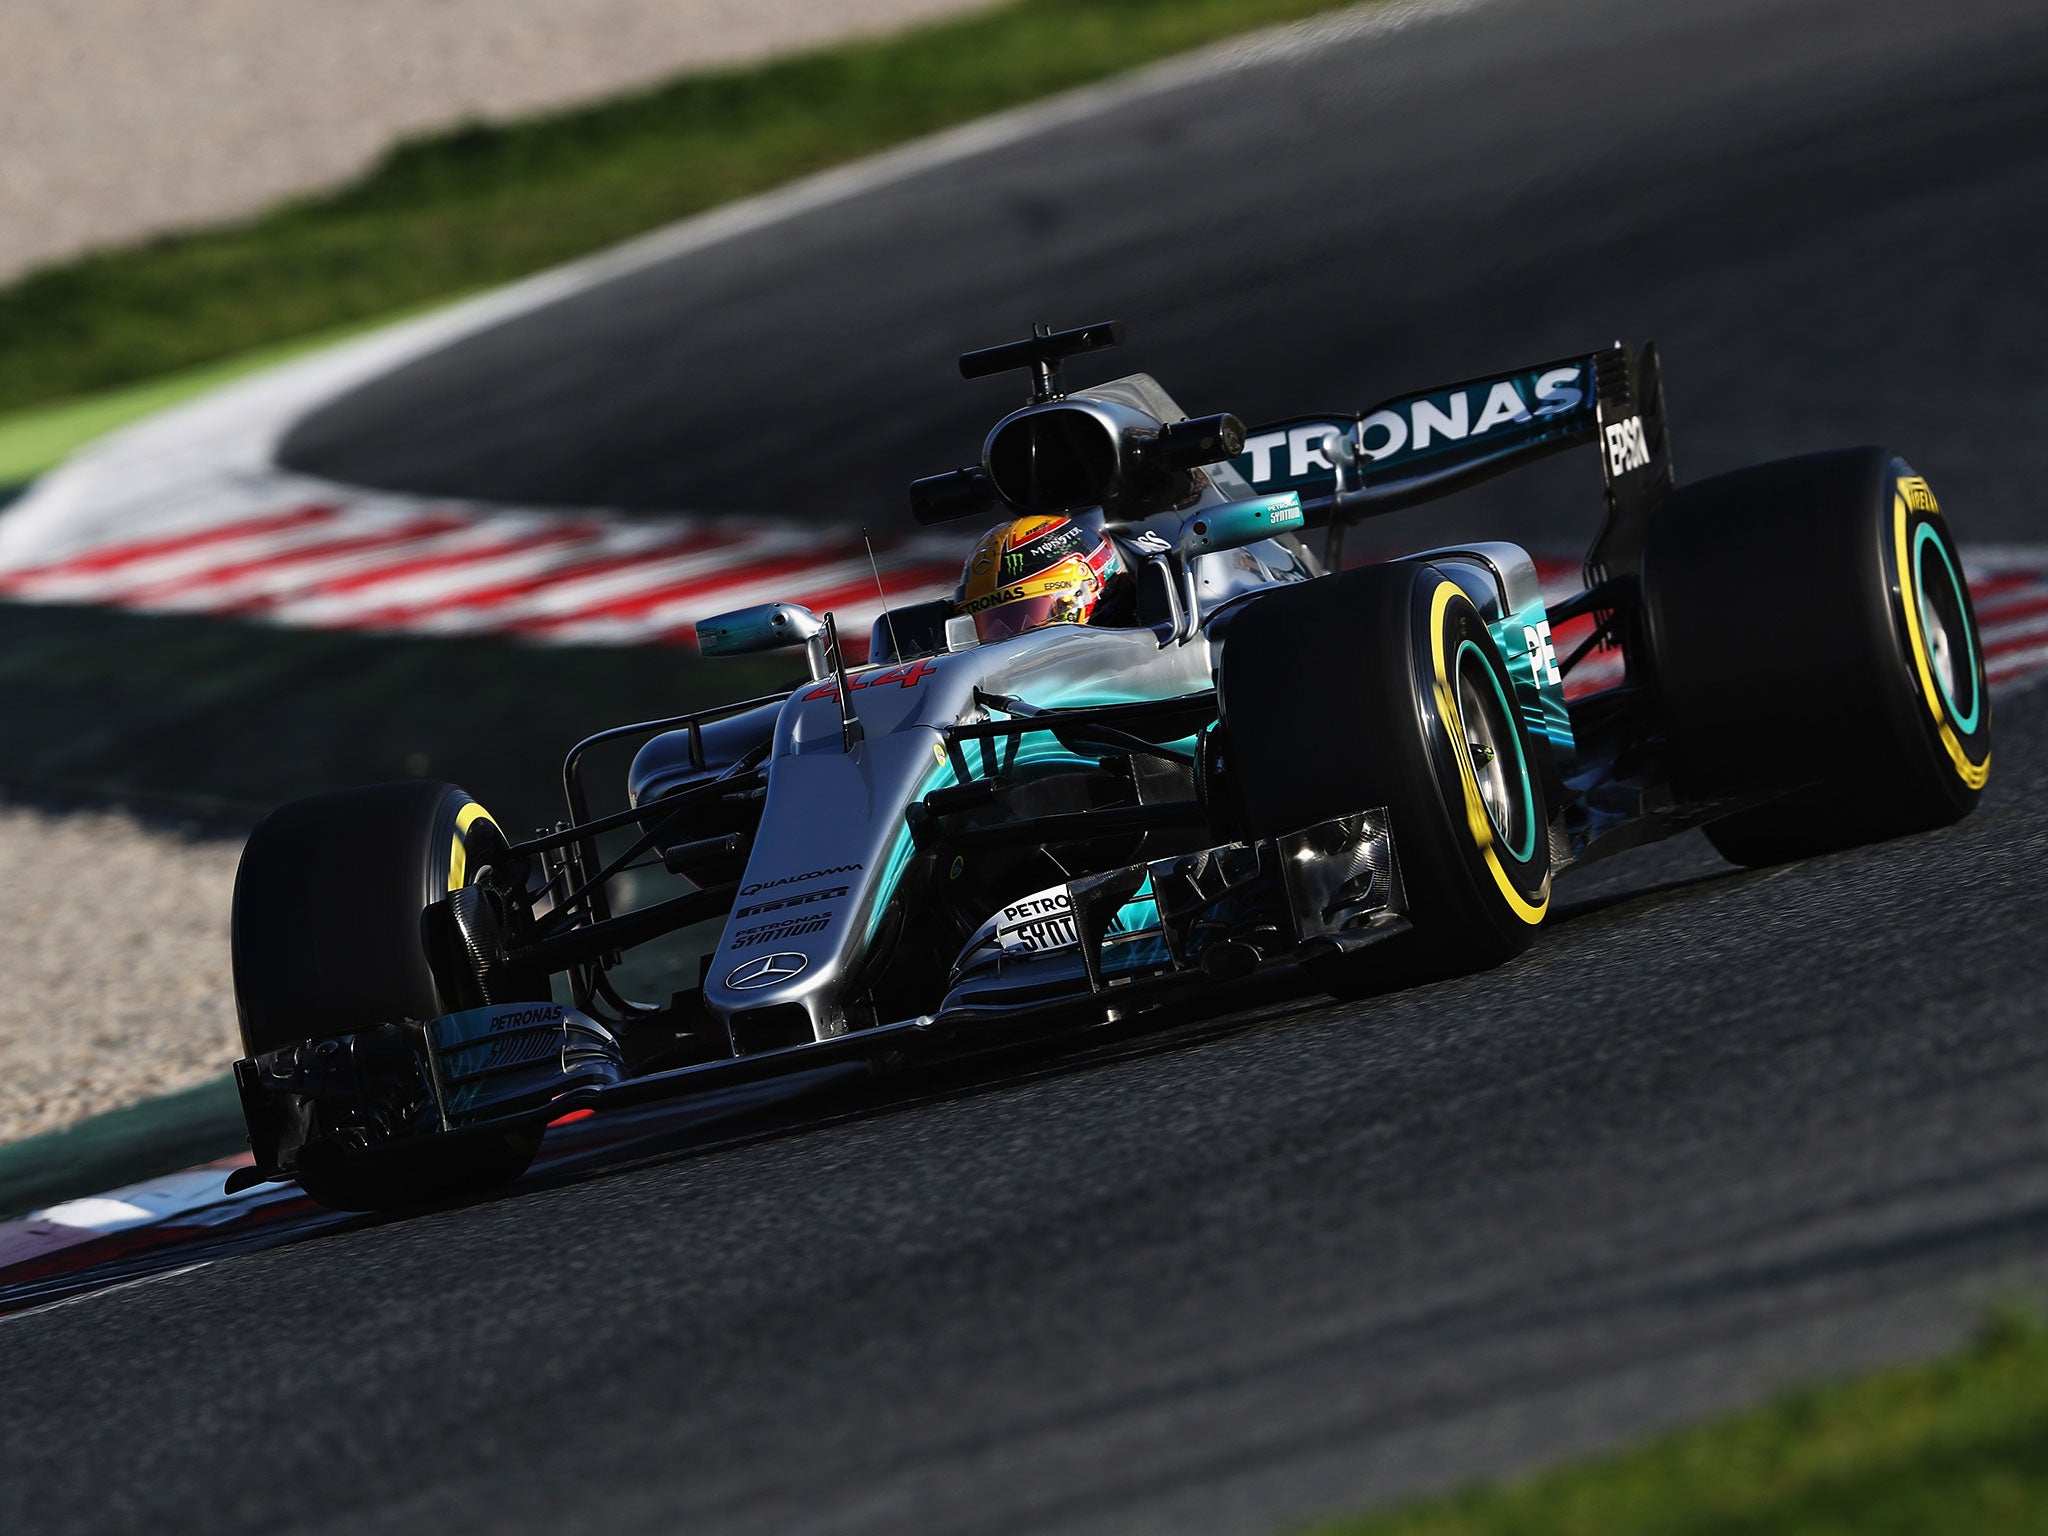 Lewis Hamilton set the fastest time on day one of pre-season testing